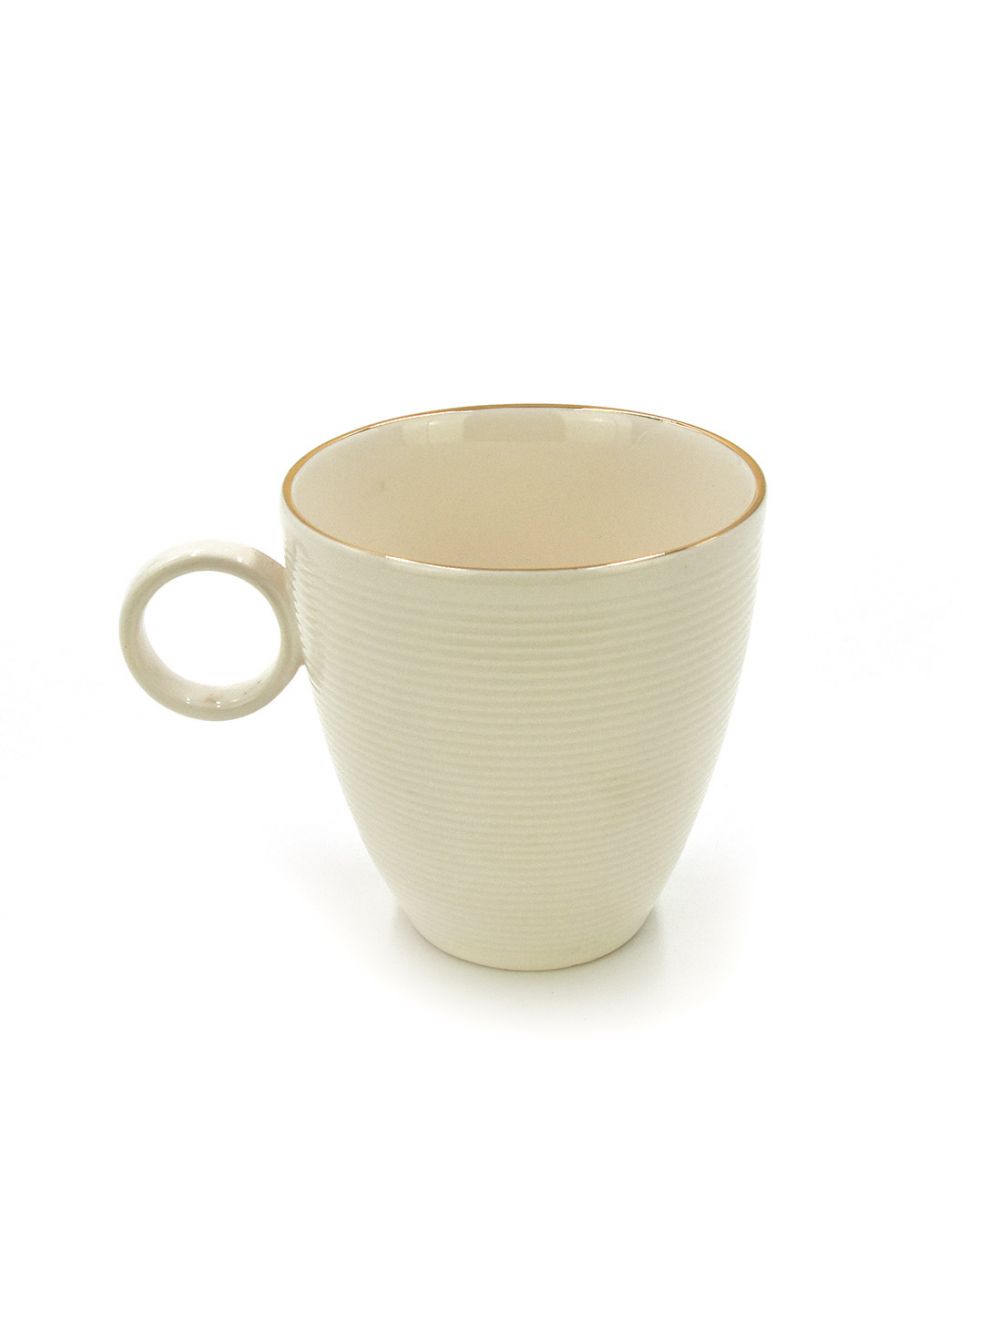 Qualitier Mug White-Gold